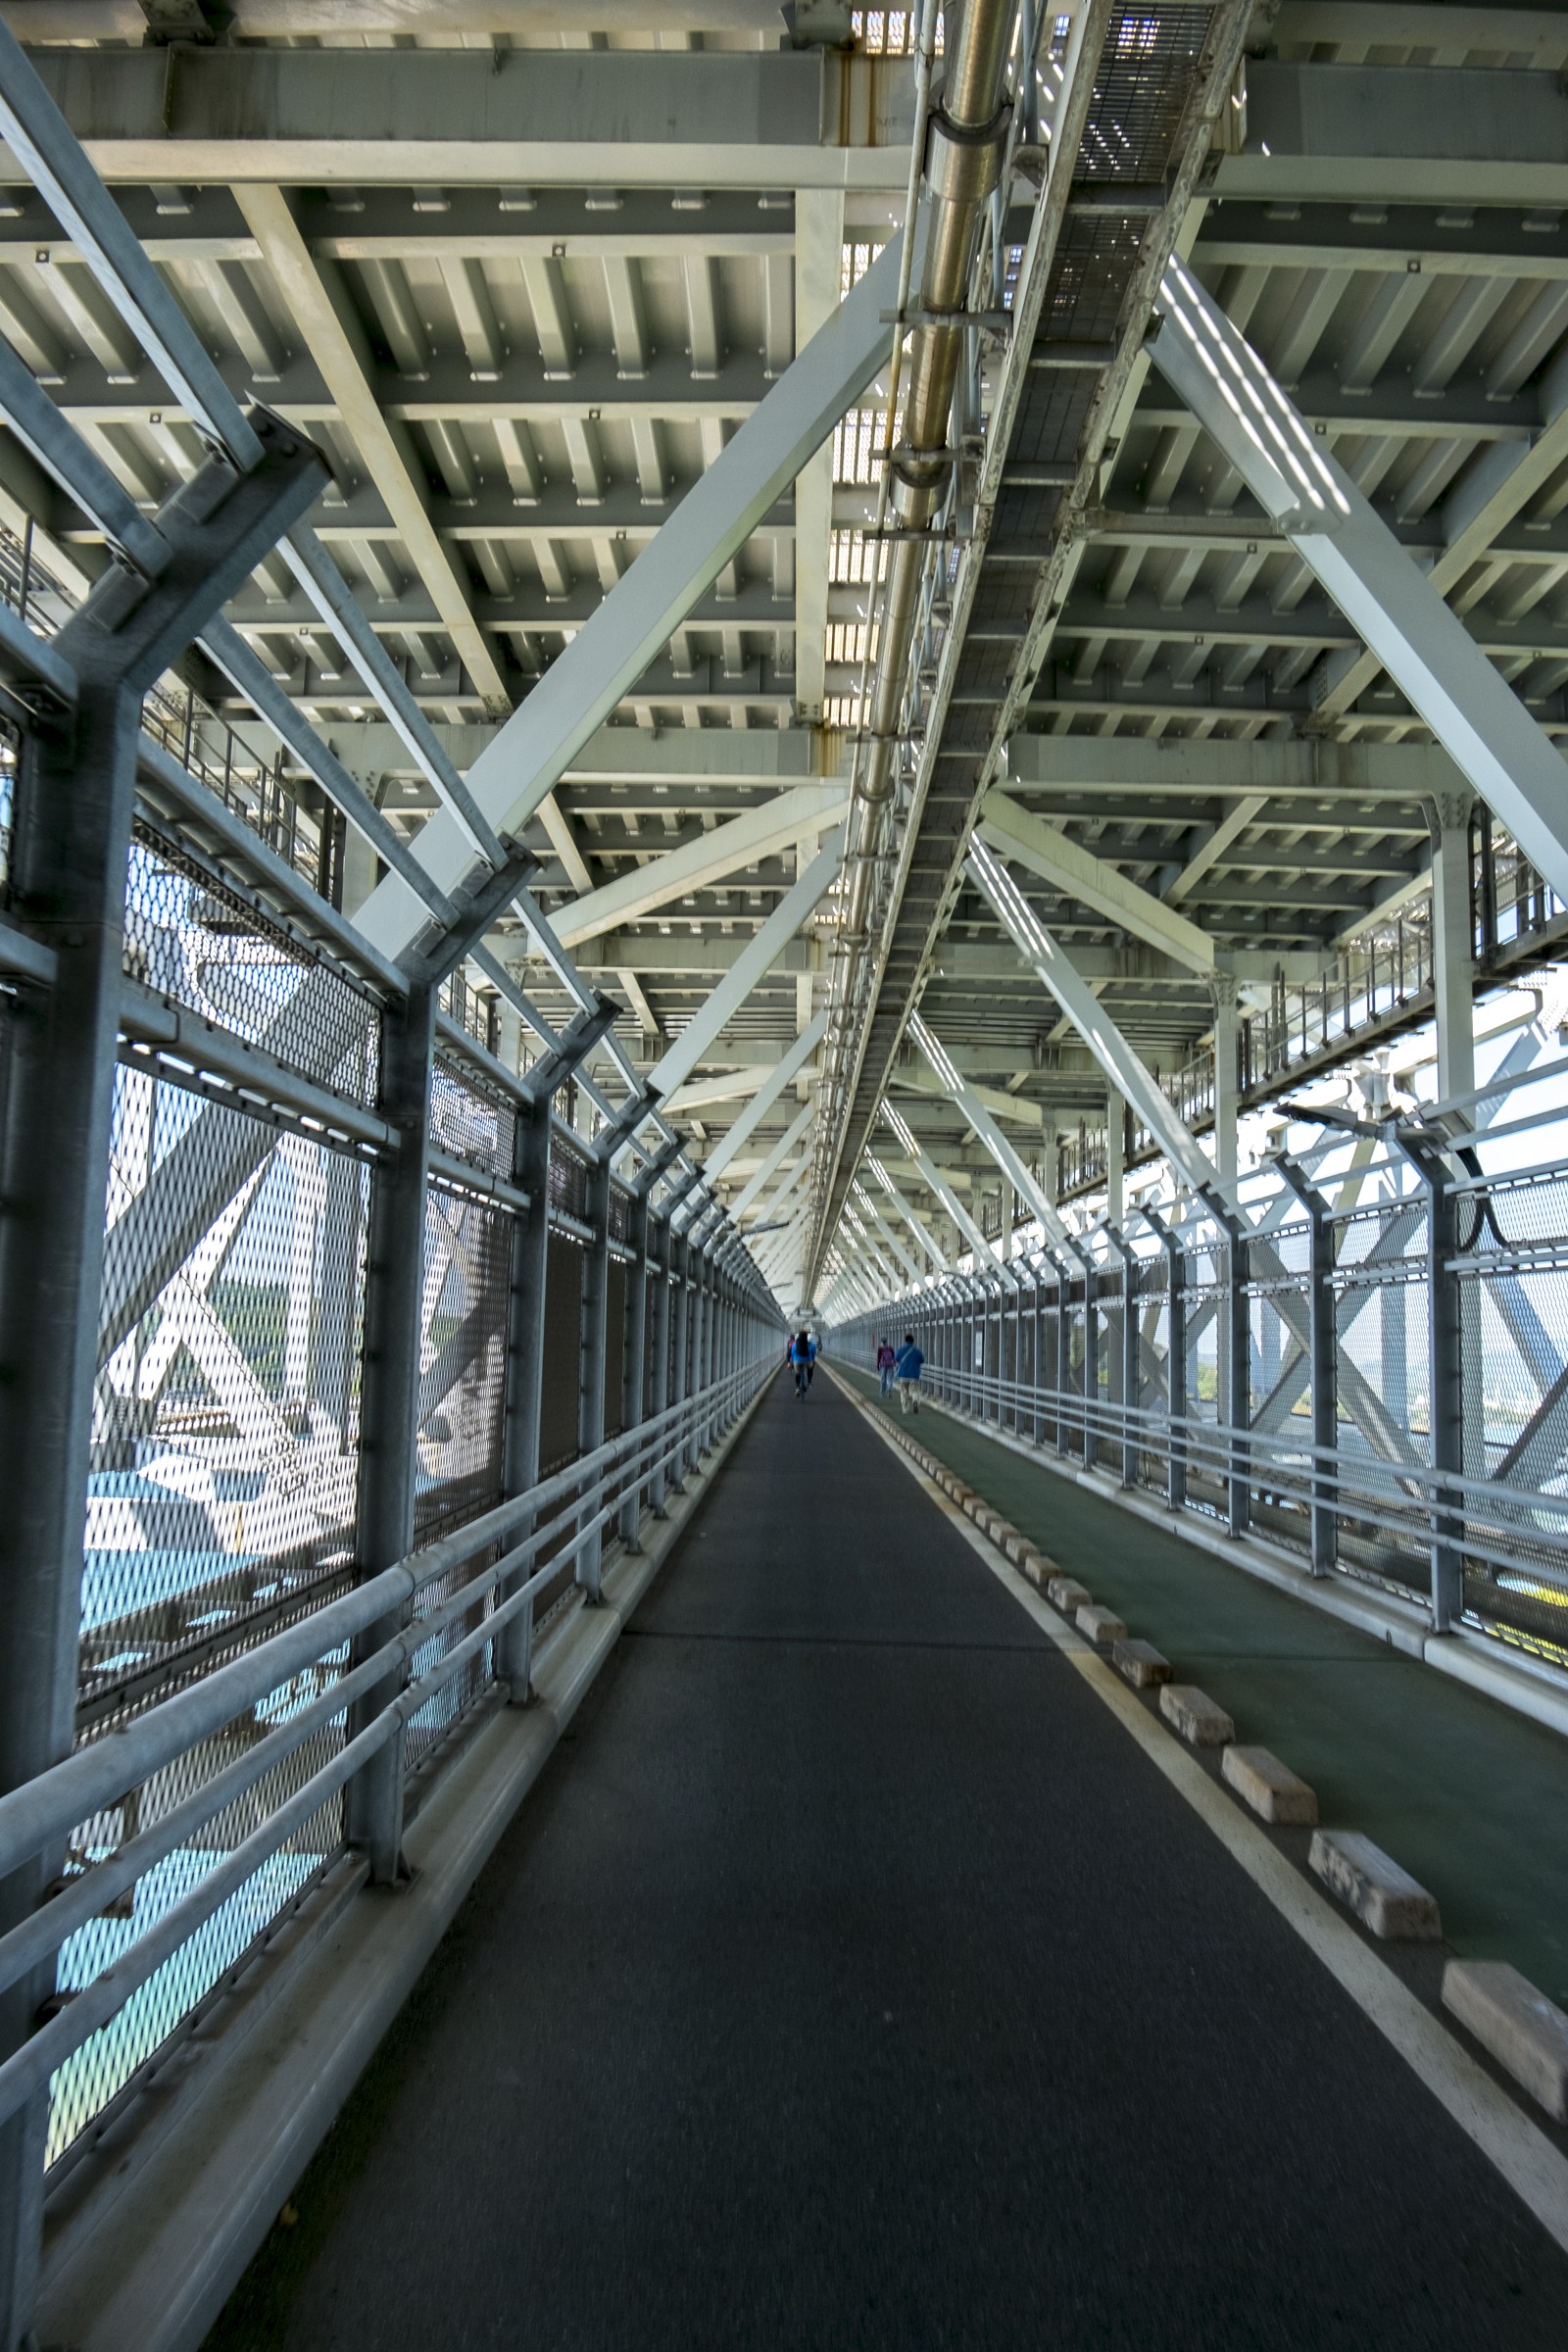 しまなみサイクリングは尾道から 理由は 因島大橋からの景観 フリー写真有